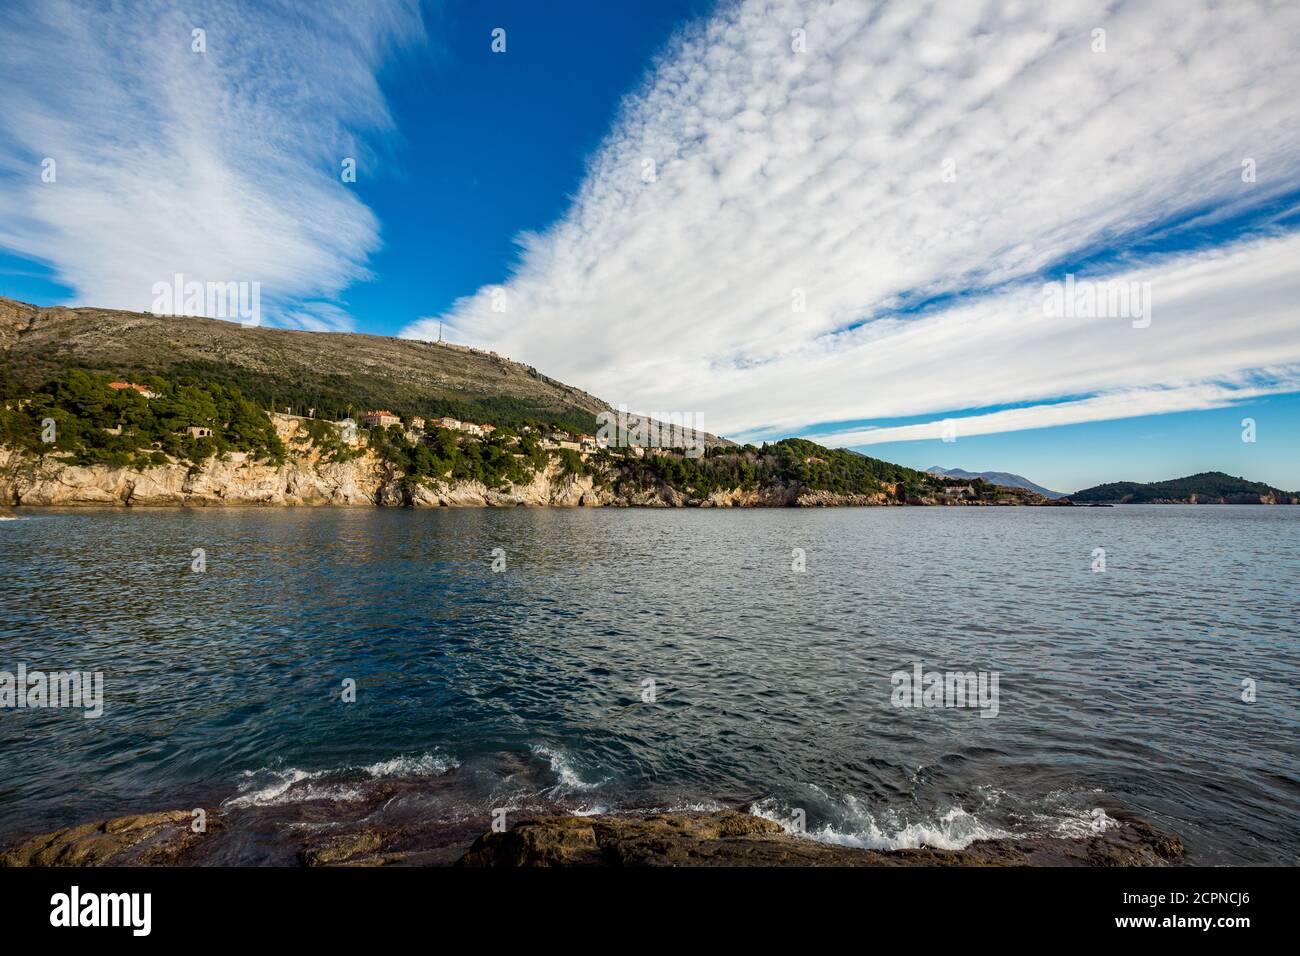 Vue sur la mer Adriatique, Dubrovnik. Vue ensoleillée sur la journée d'hiver, Croatie. Bleu eau de mer, paysage couvert de nuages blancs sur la terre. Photographie de voyage. Banque D'Images